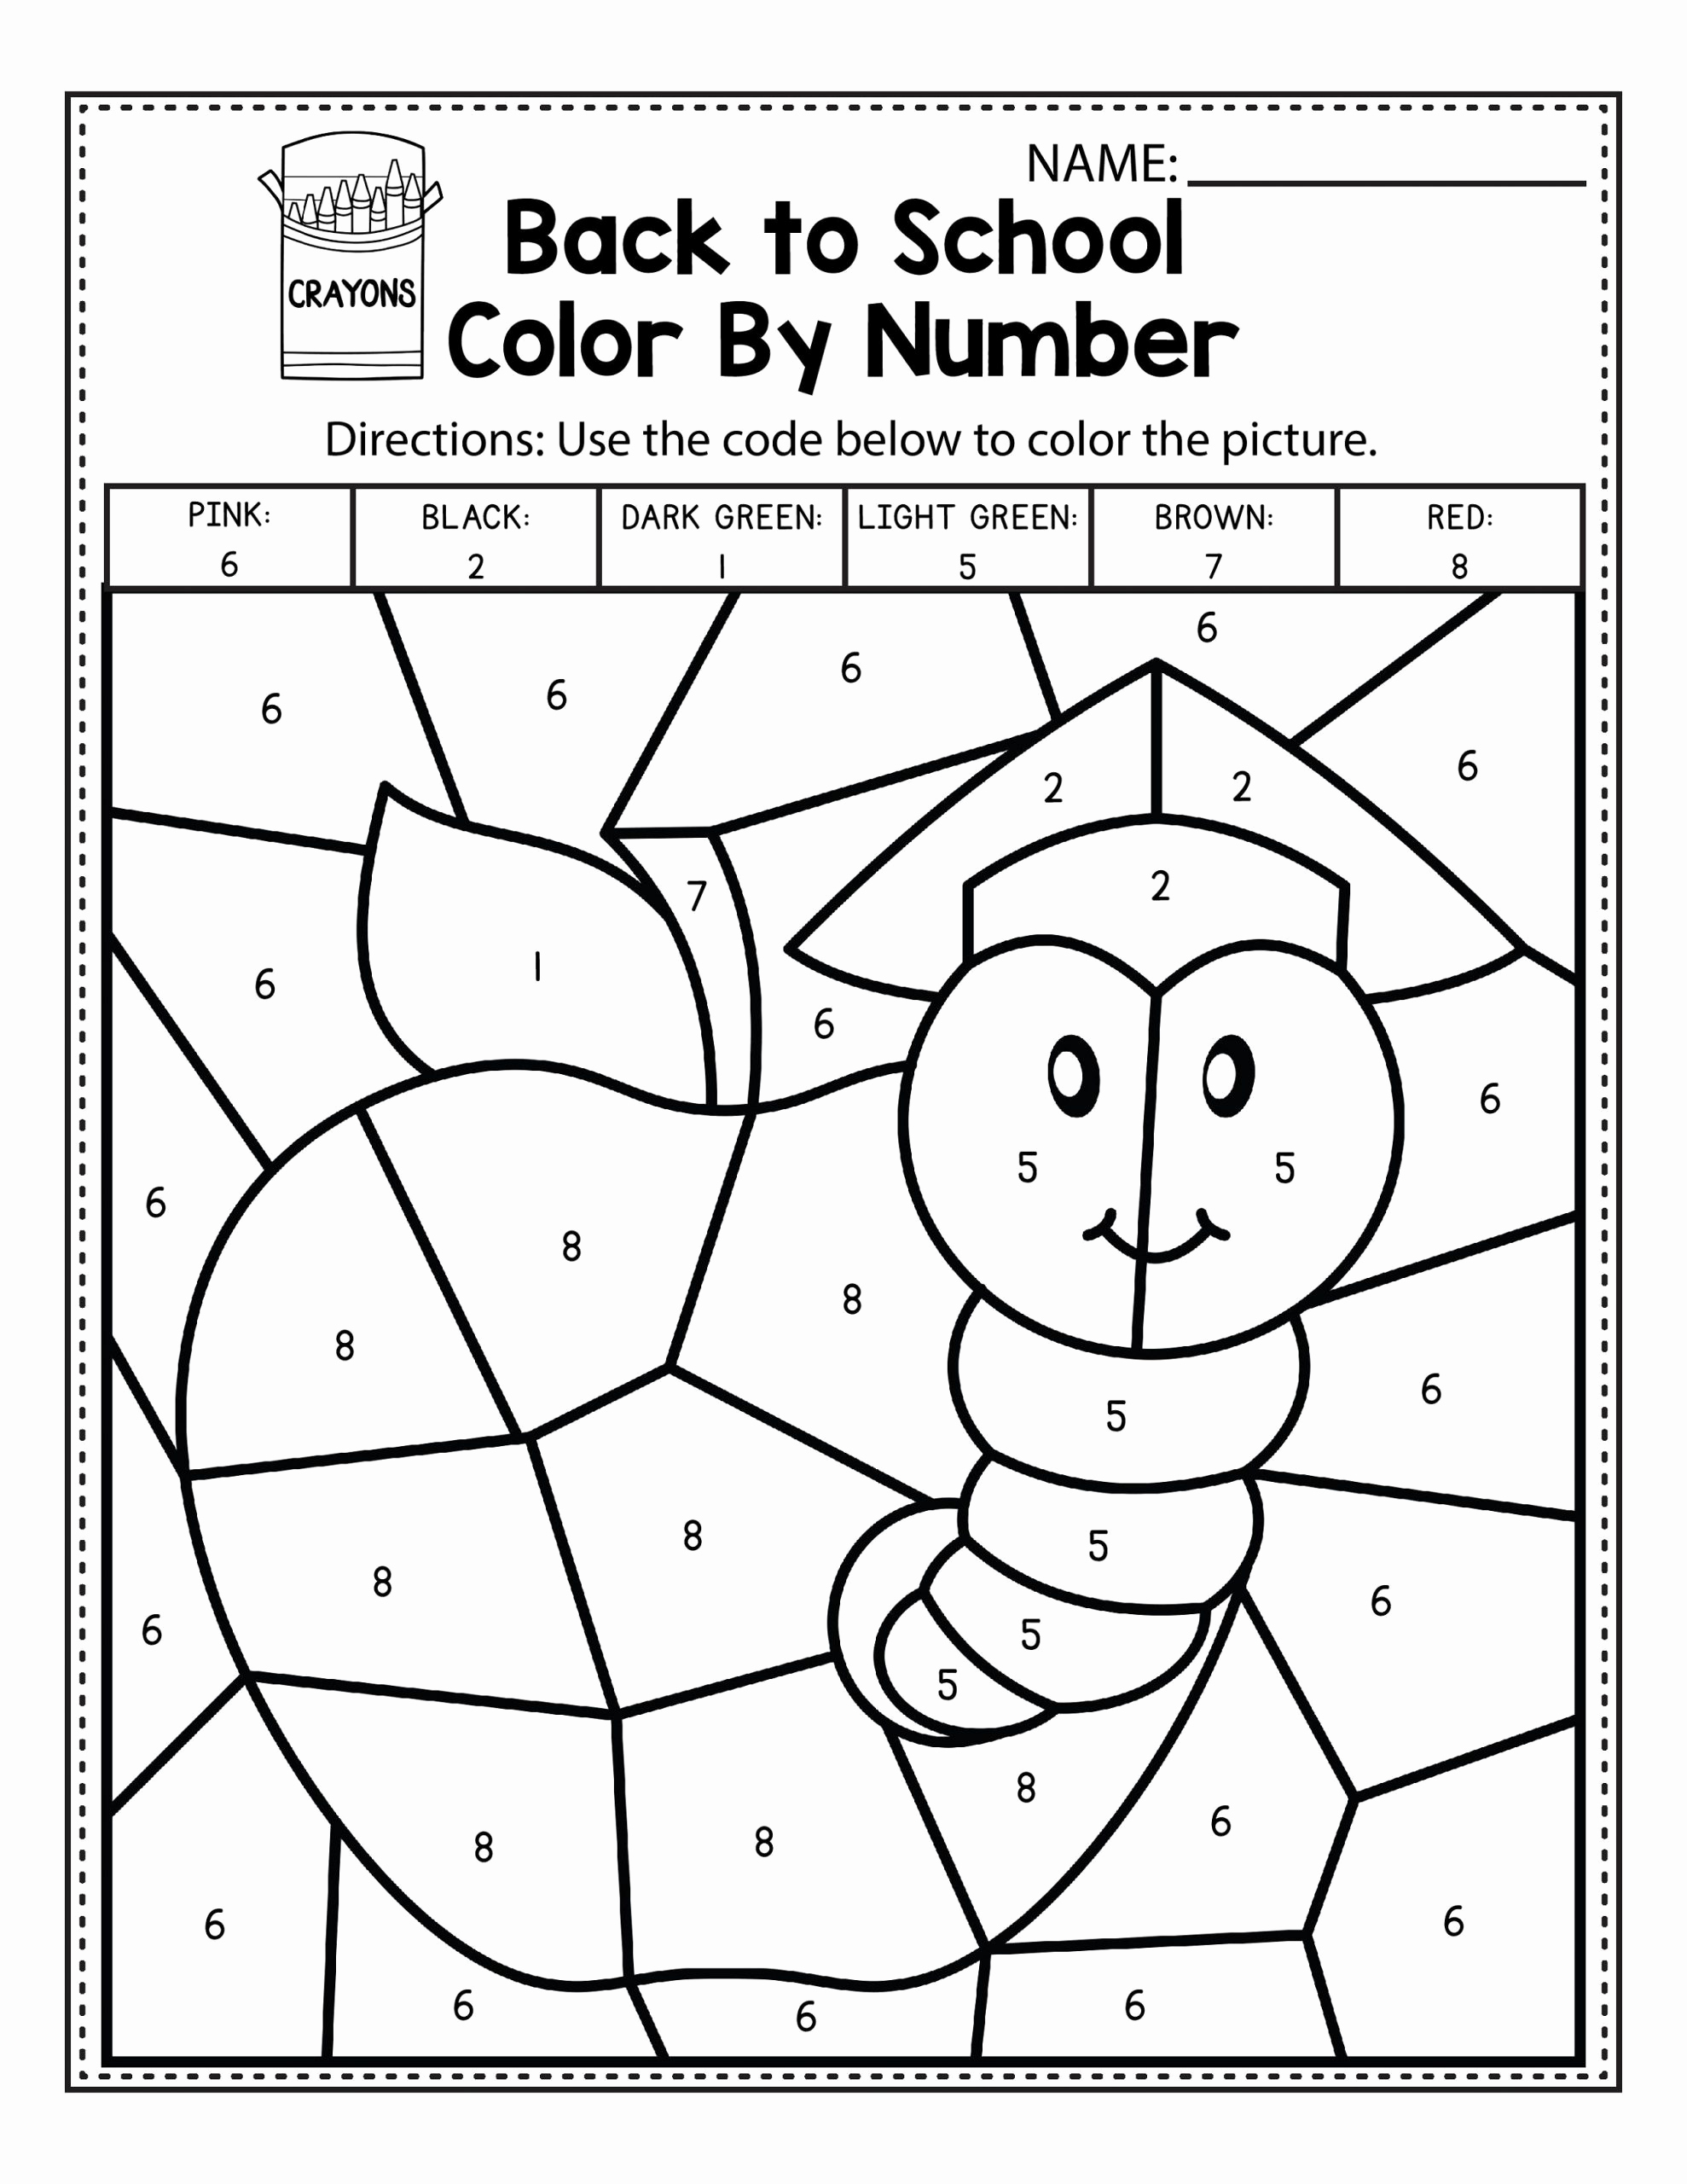 Kindergarten Color By Number Worksheets New Easy Color By Number Worksheets For Kindergarten